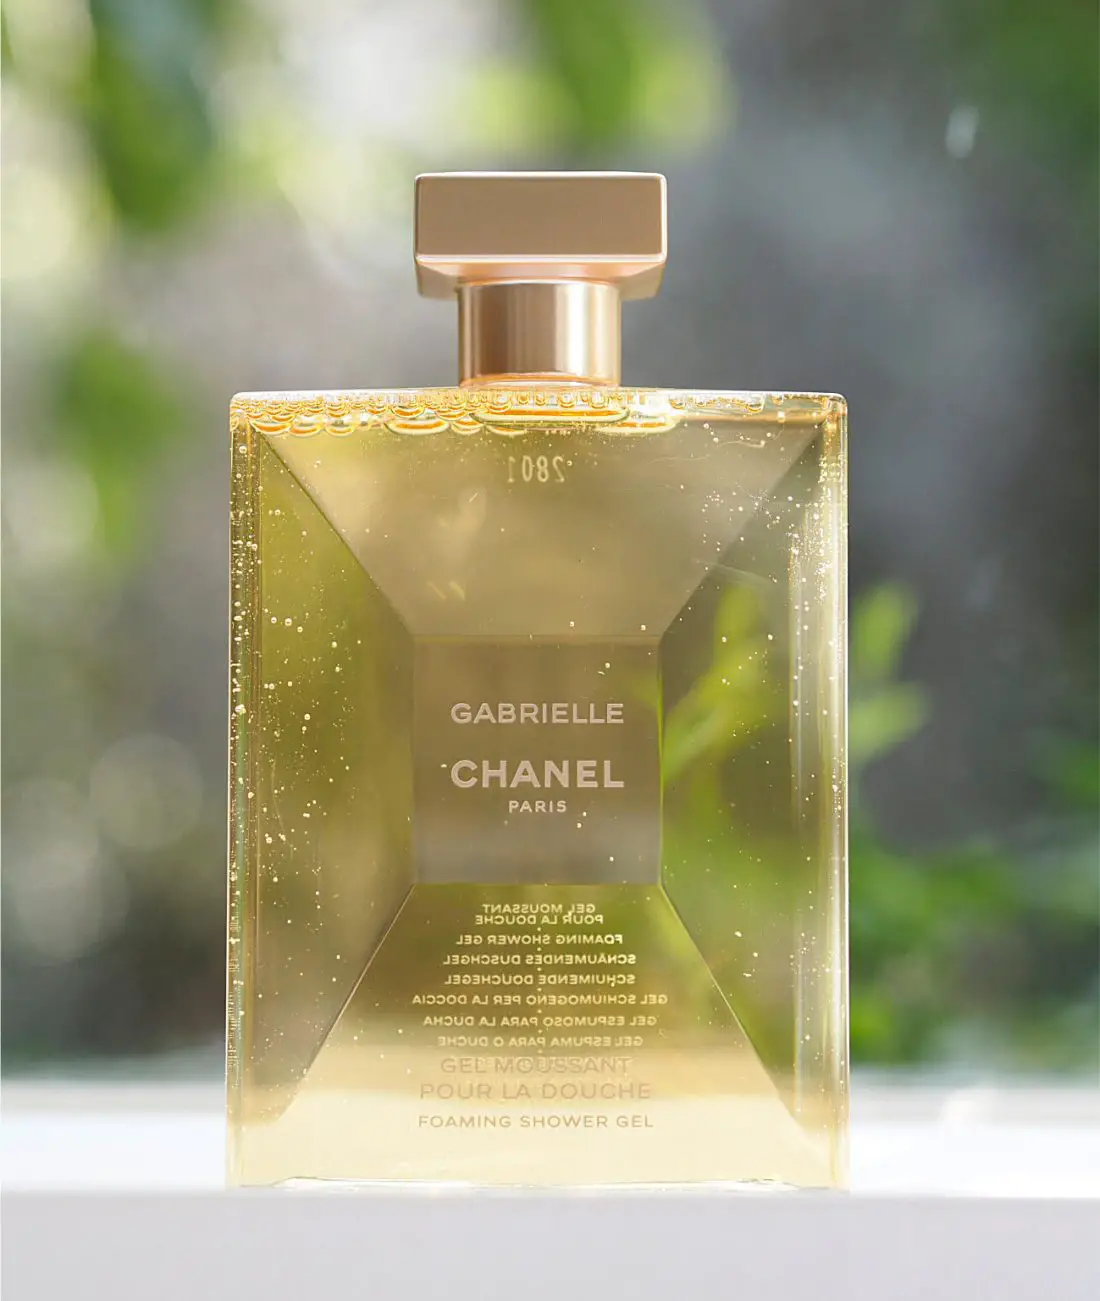 Gabrielle Chanel Foaming Shower Gel